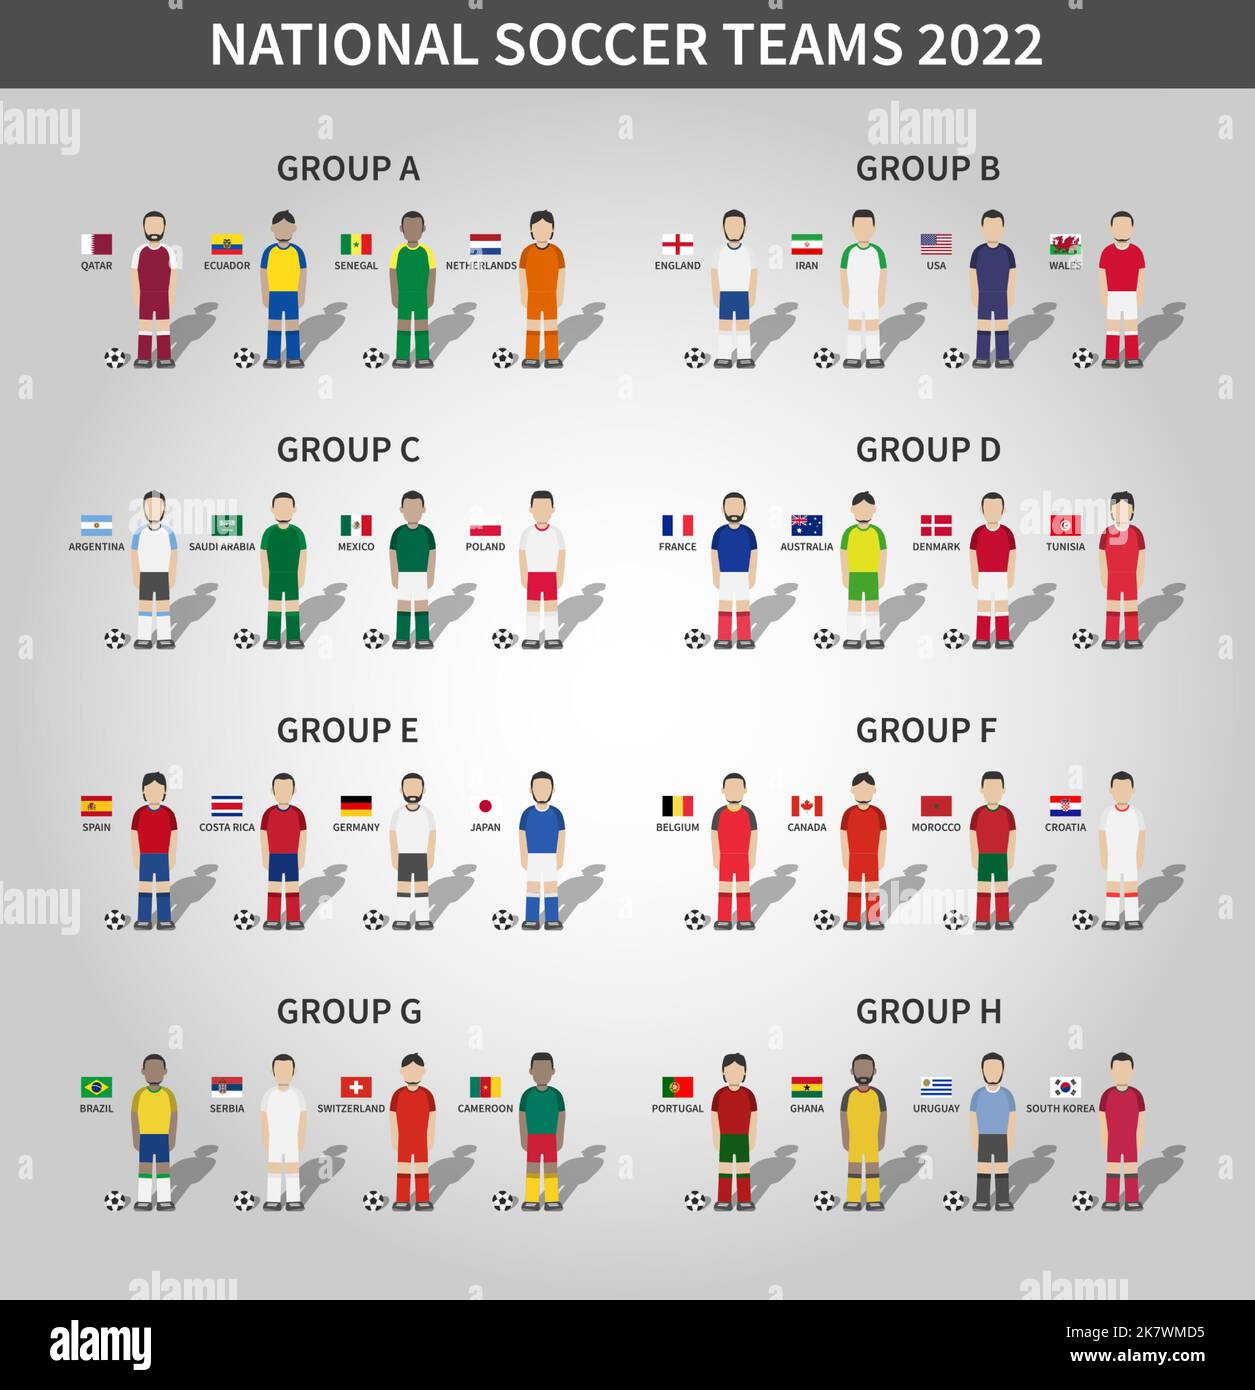 Tournoi de football de la coupe du monde de la fifa au Qatar 2022 . 32 équipes de groupe de stades et de personnage de dessin animé avec des drapeaux de maillot et de pays . Vecteur . Illustration de Vecteur